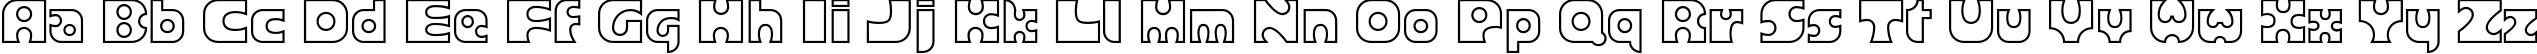 Пример написания английского алфавита шрифтом Joker Outline